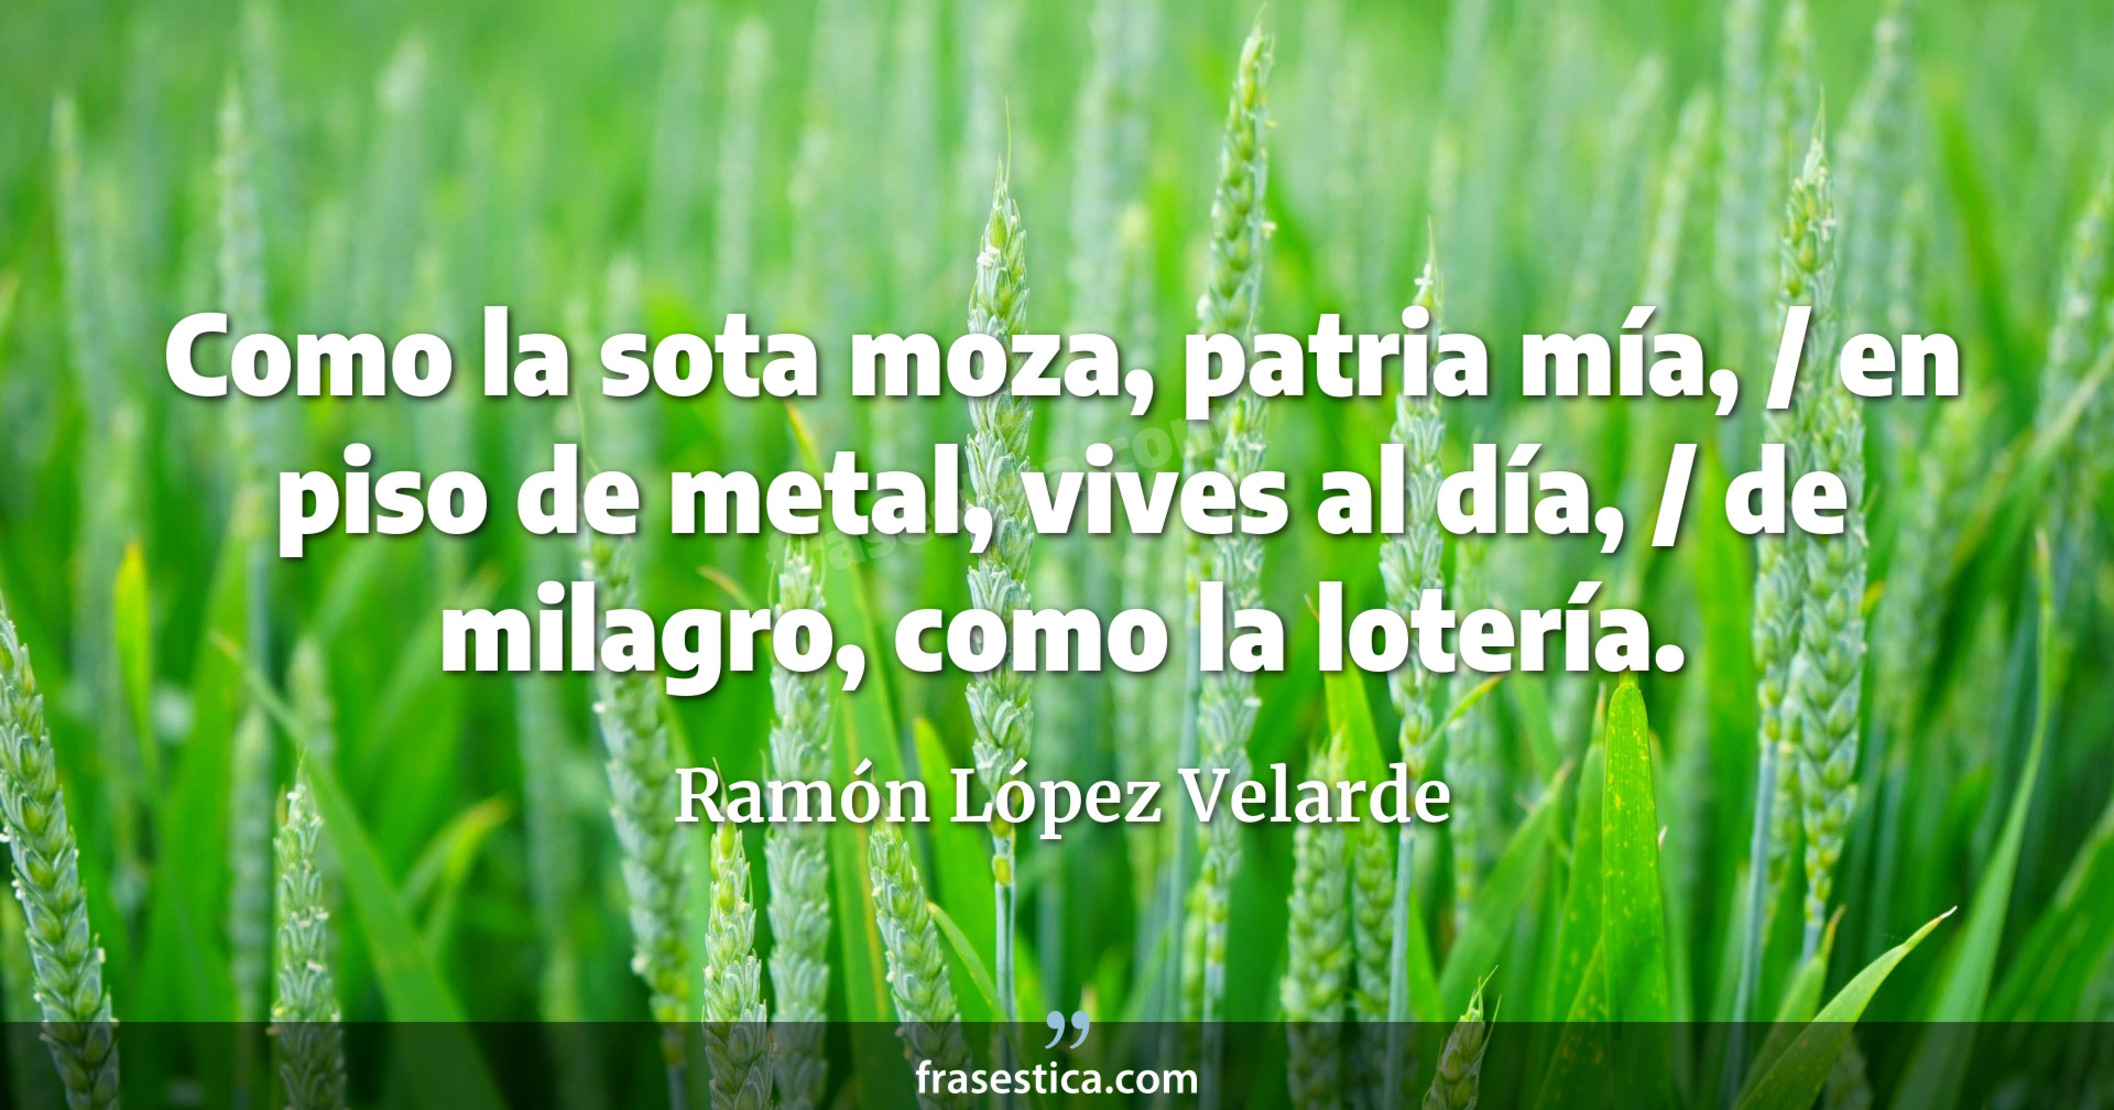 Como la sota moza, patria mía, / en piso de metal, vives al día, / de milagro, como la lotería. - Ramón López Velarde